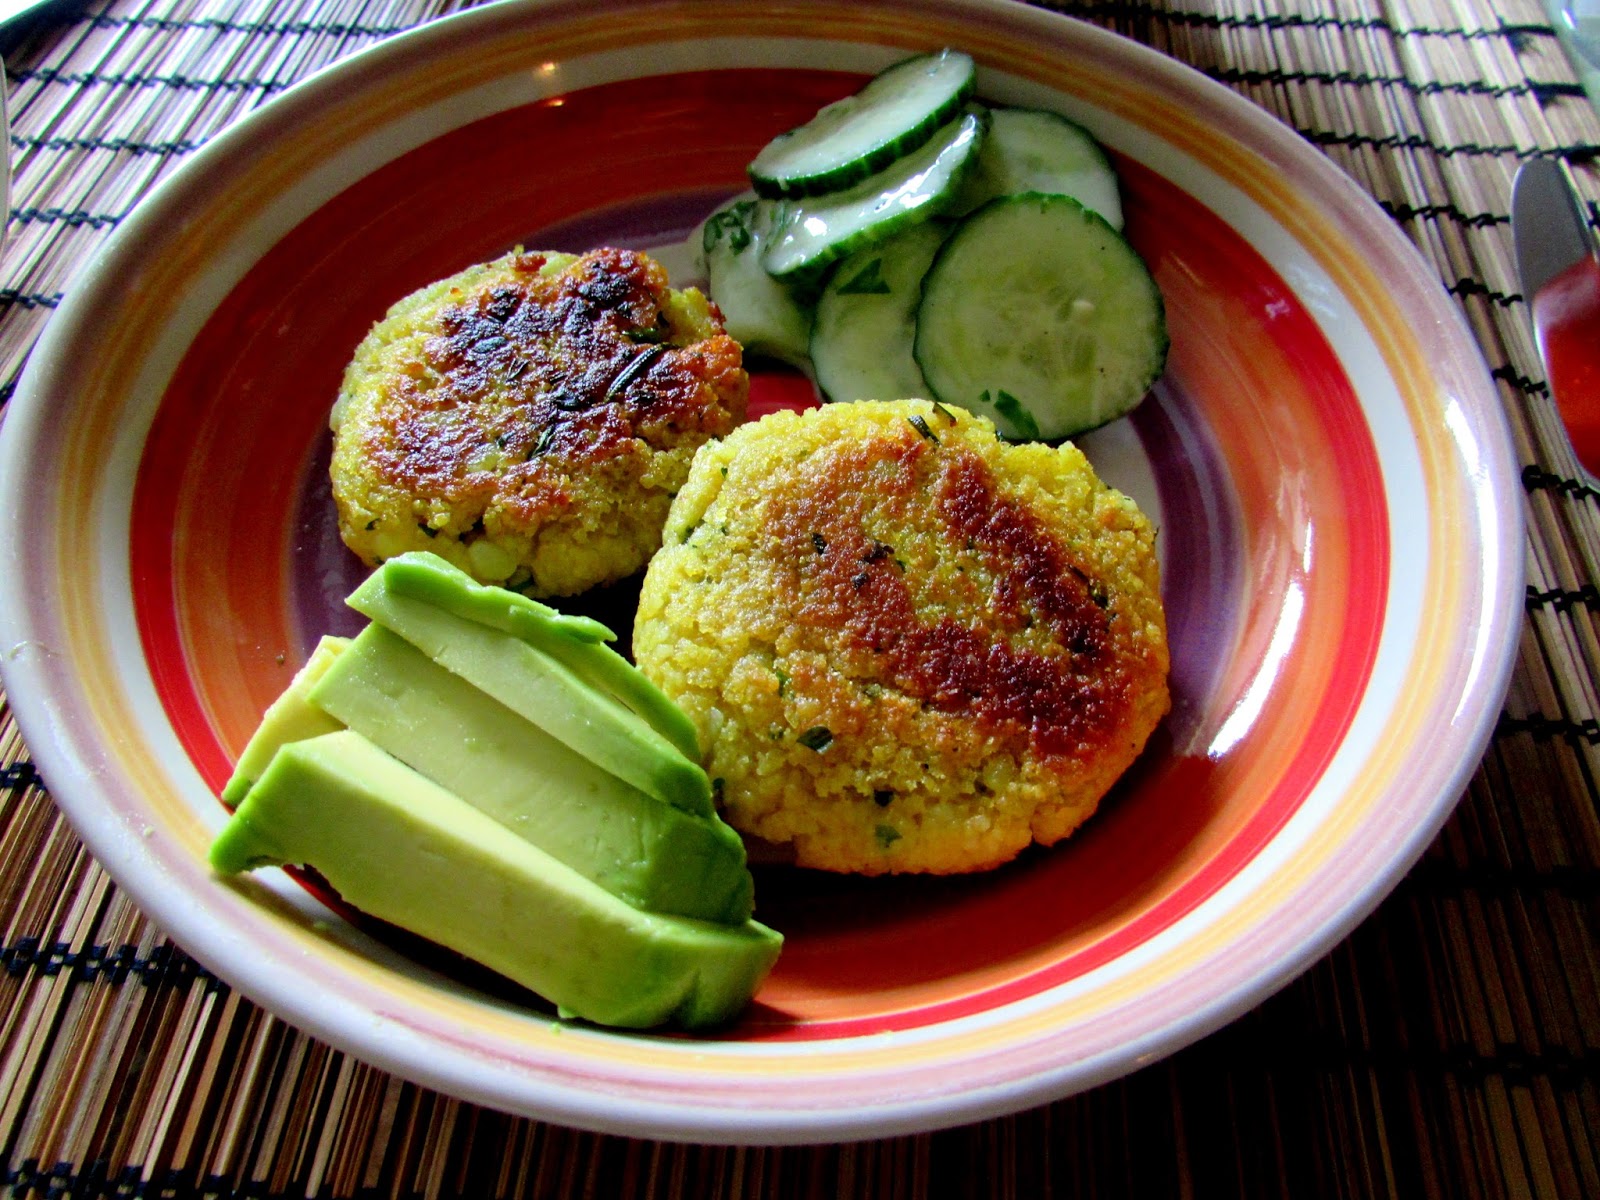 Kartoffel-Couscous-Laibchen mit Gurkensalat - healthy and whole